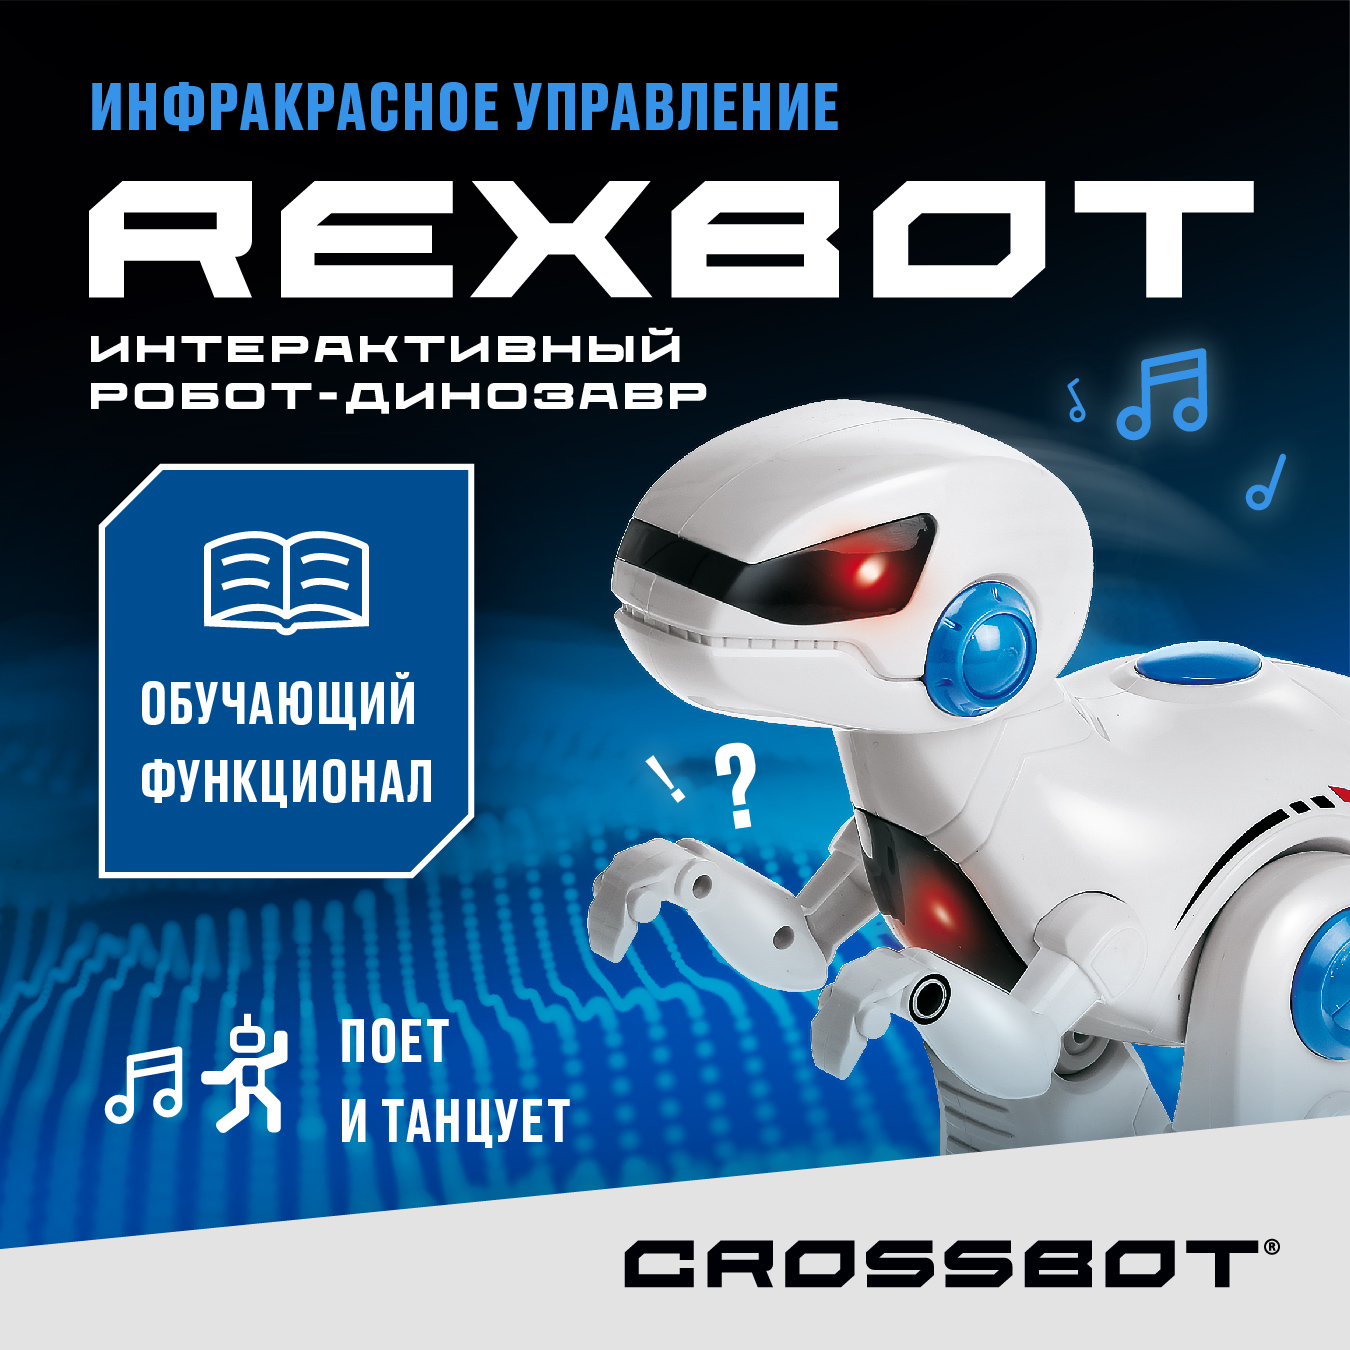 Радиоуправляемая игрушка Робот Динозавр Рекс на пульте Crossbot игрушка интерактивная jiggly pets динозавр рекс